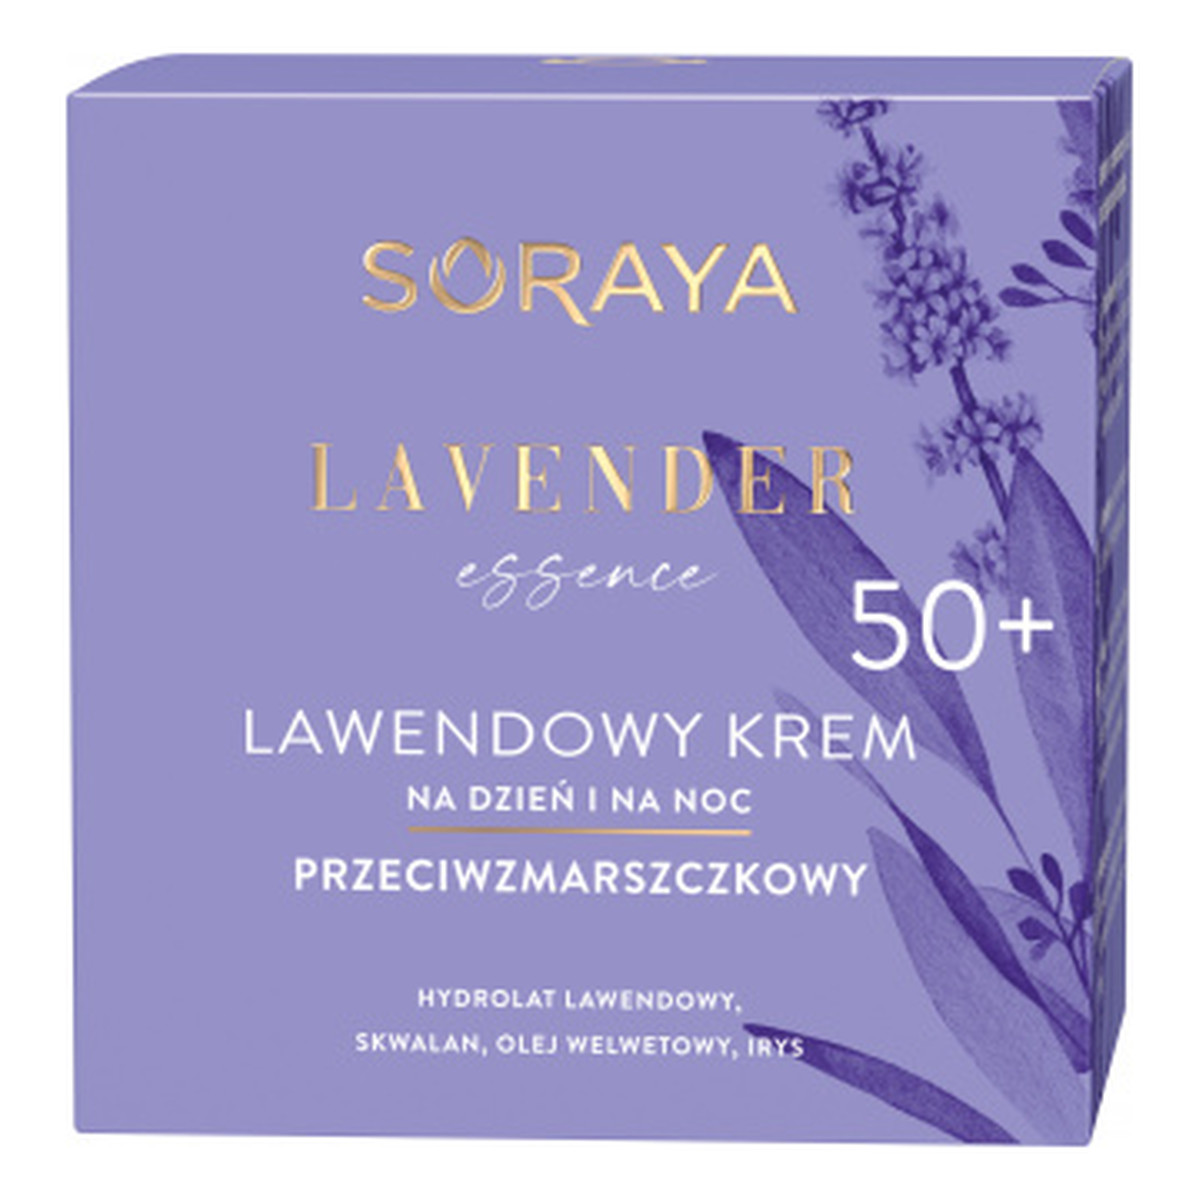 Soraya Lavender Essence Lawendowy krem przeciwzmarszczkowy na dzień i na noc 50+ 50ml